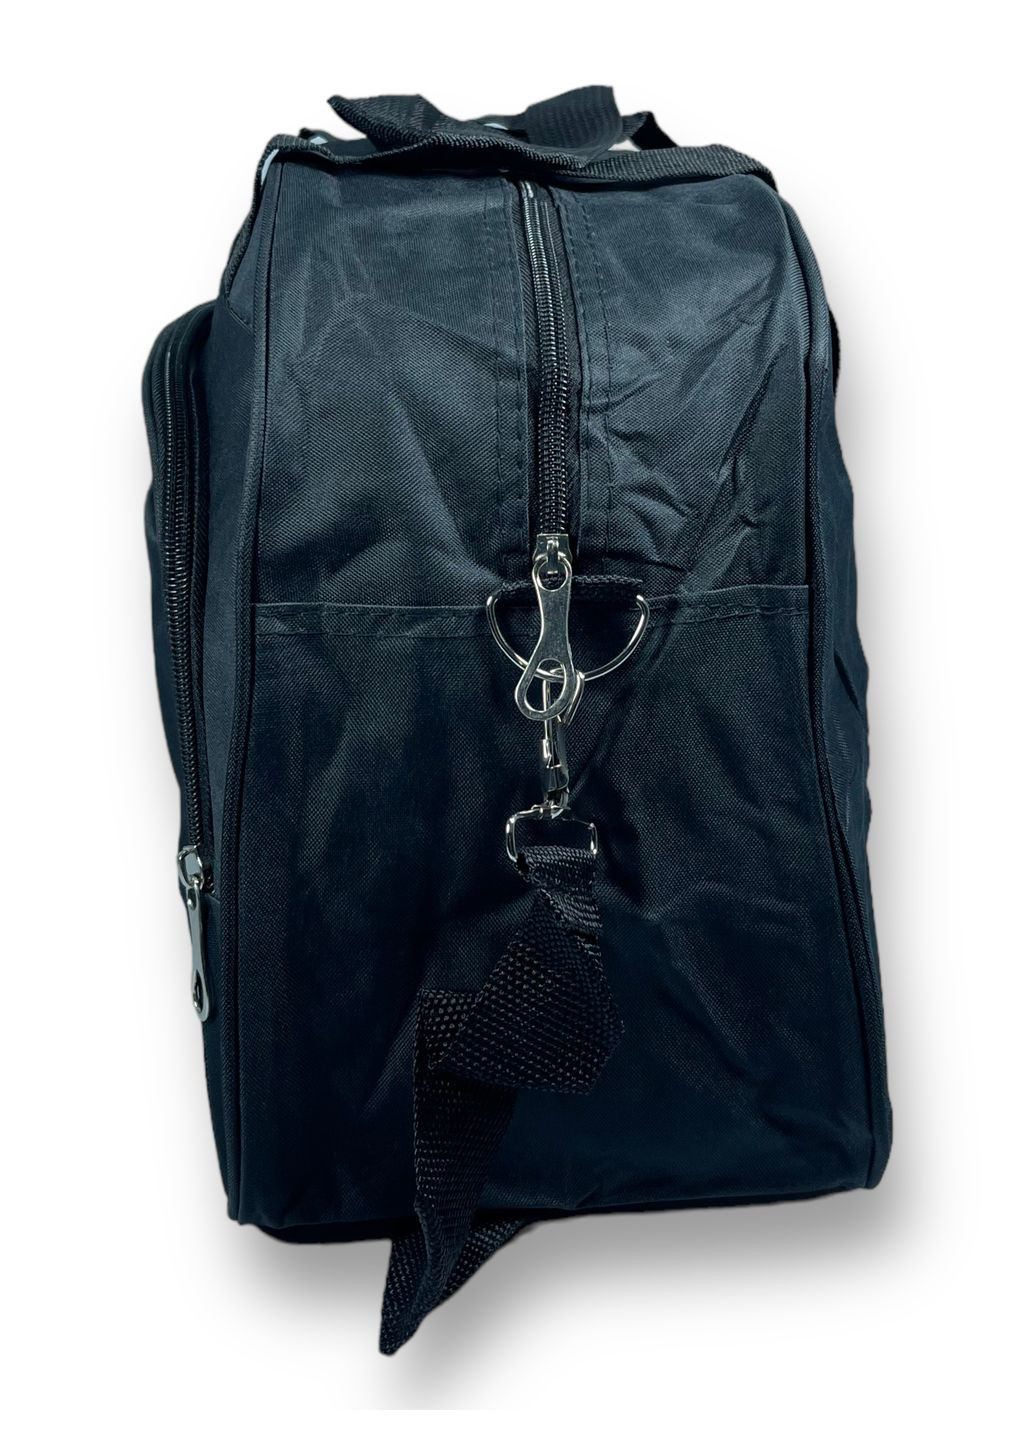 Дорожня сумка 20 л,, 1 відділення, 1 додаткове відділення, наплічний ремінь, розмір: 45*28*17 см, чорна Sports (268995073)